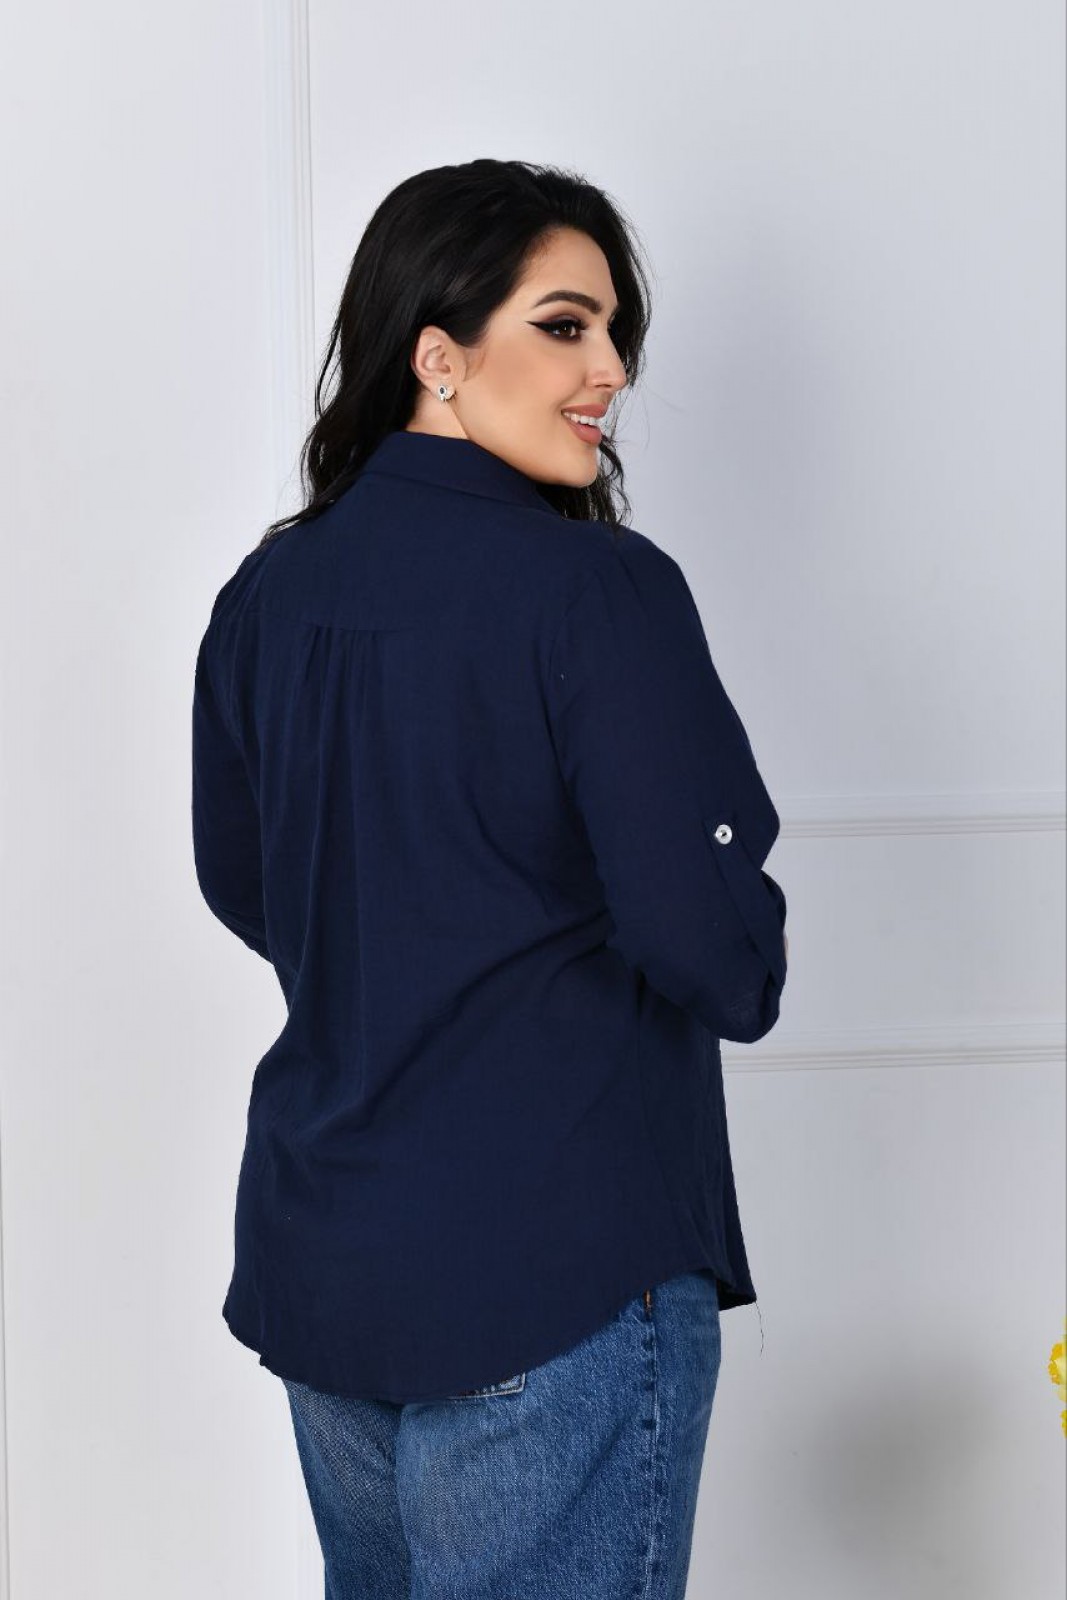 Жіноча льняна сорочка синього кольору р.58 420912